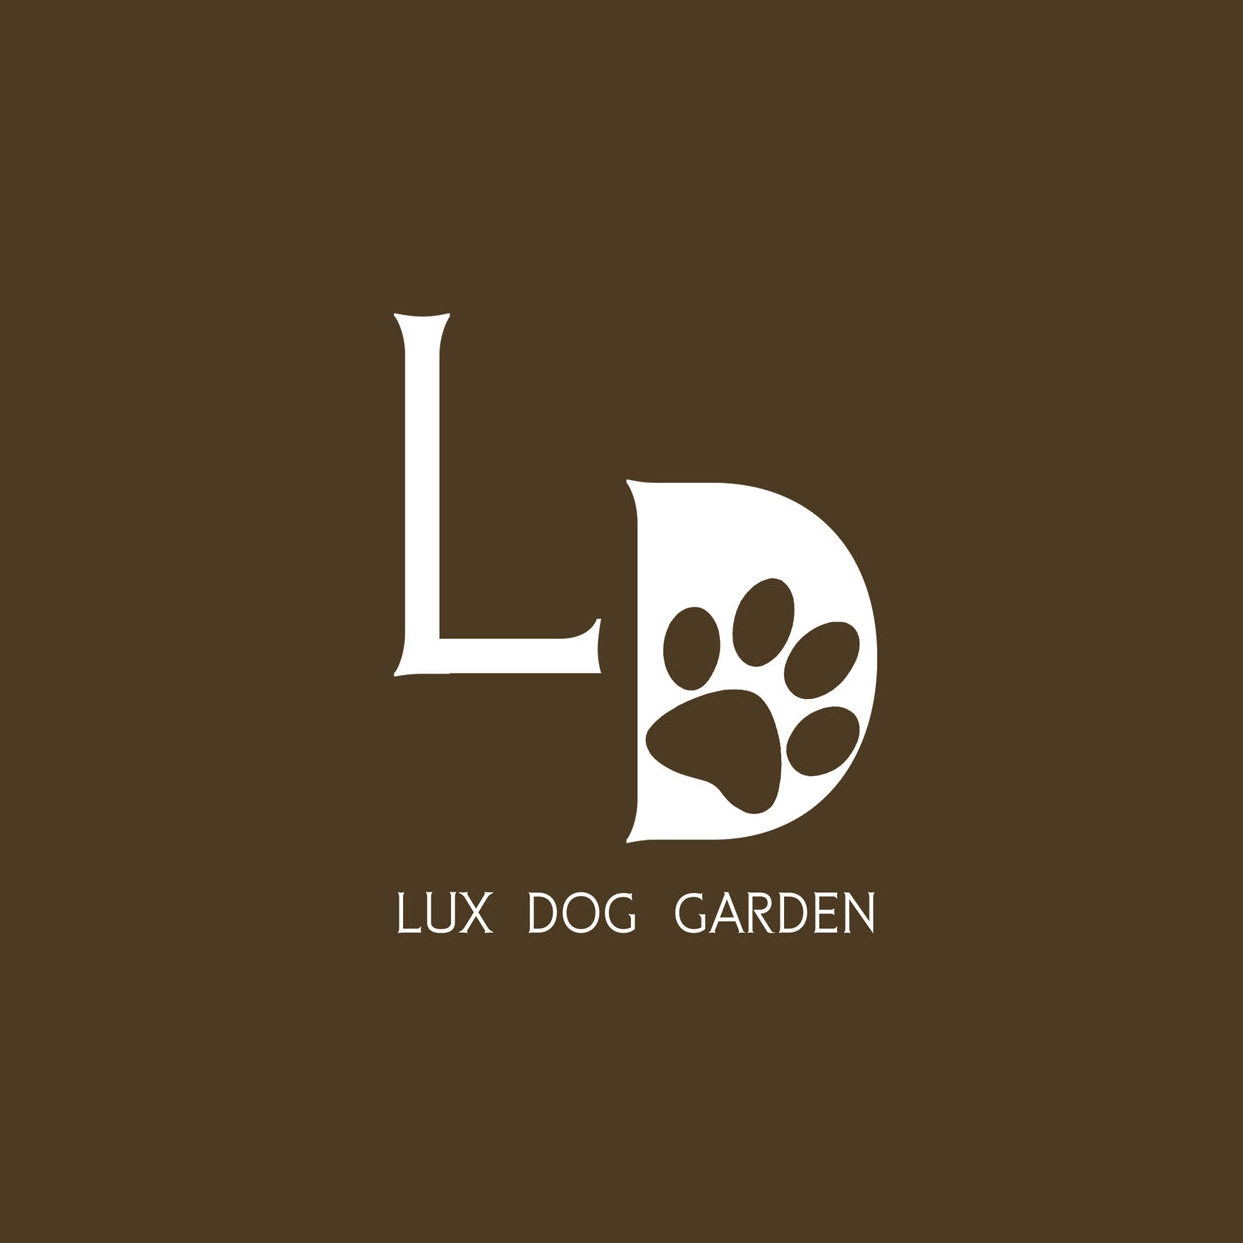 LUX DOG GARDEN